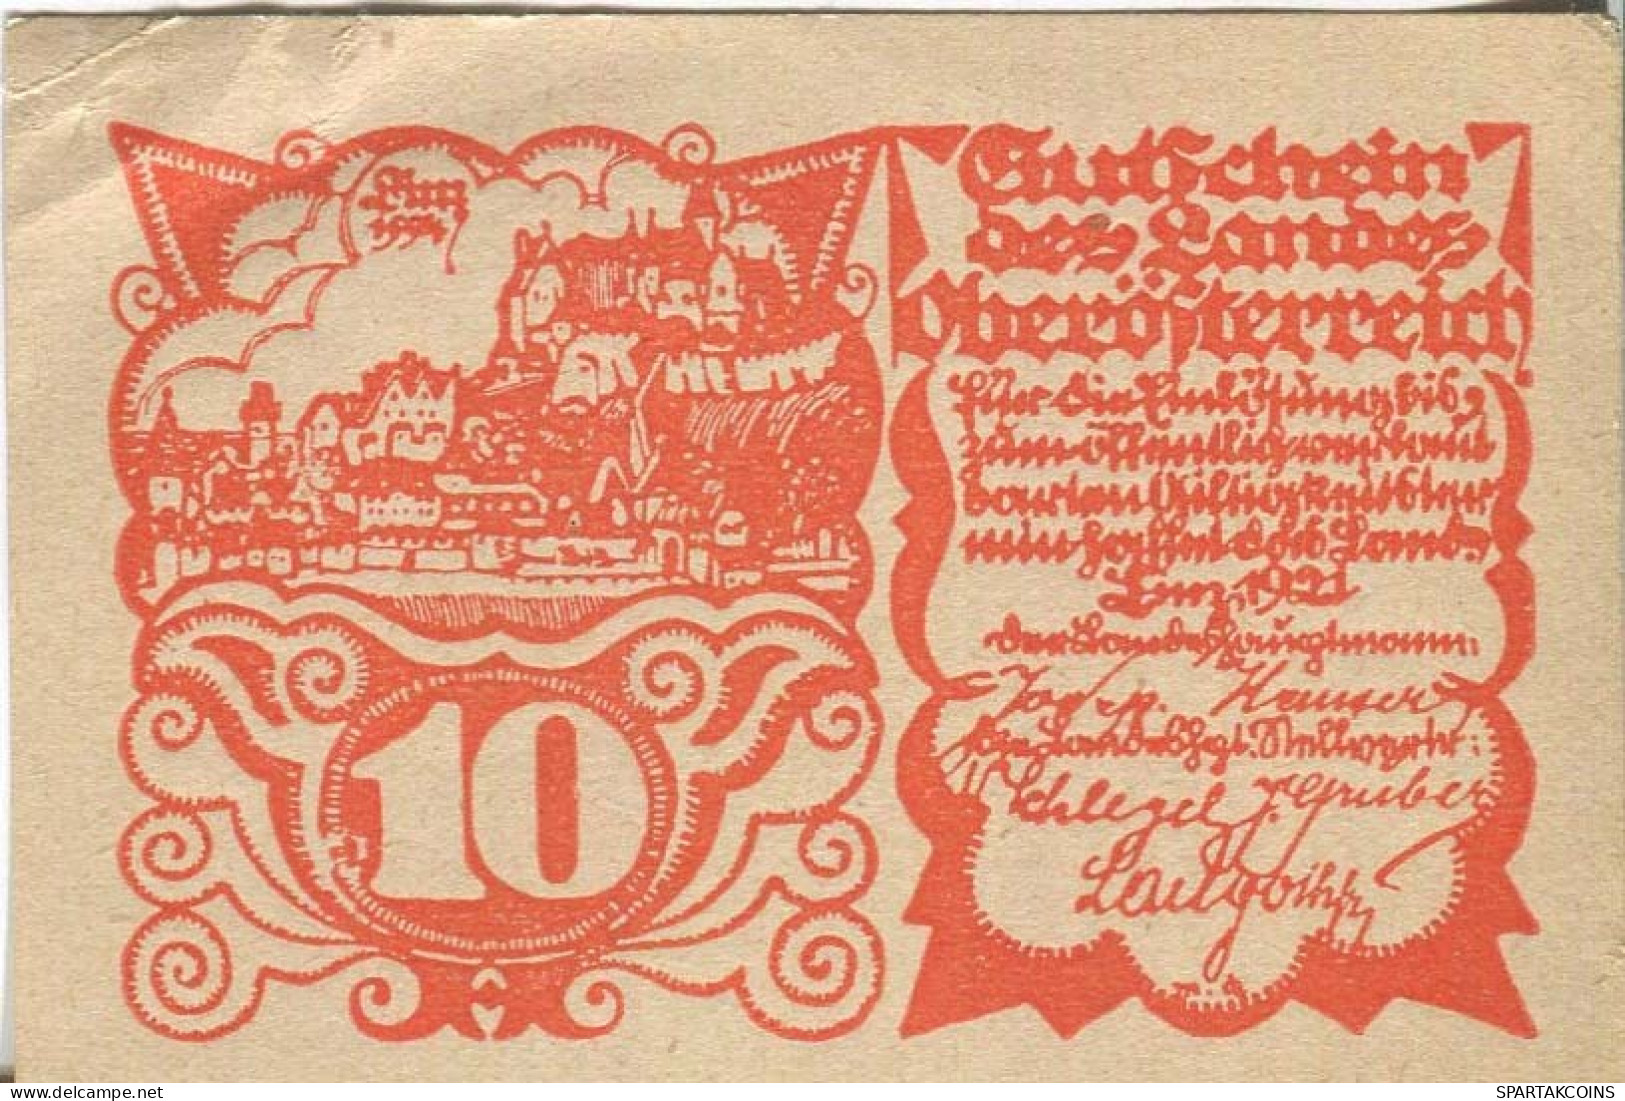 10 HELLER 1921 Stadt Oberösterreich Österreich Notgeld Papiergeld Banknote #PL764 - Lokale Ausgaben